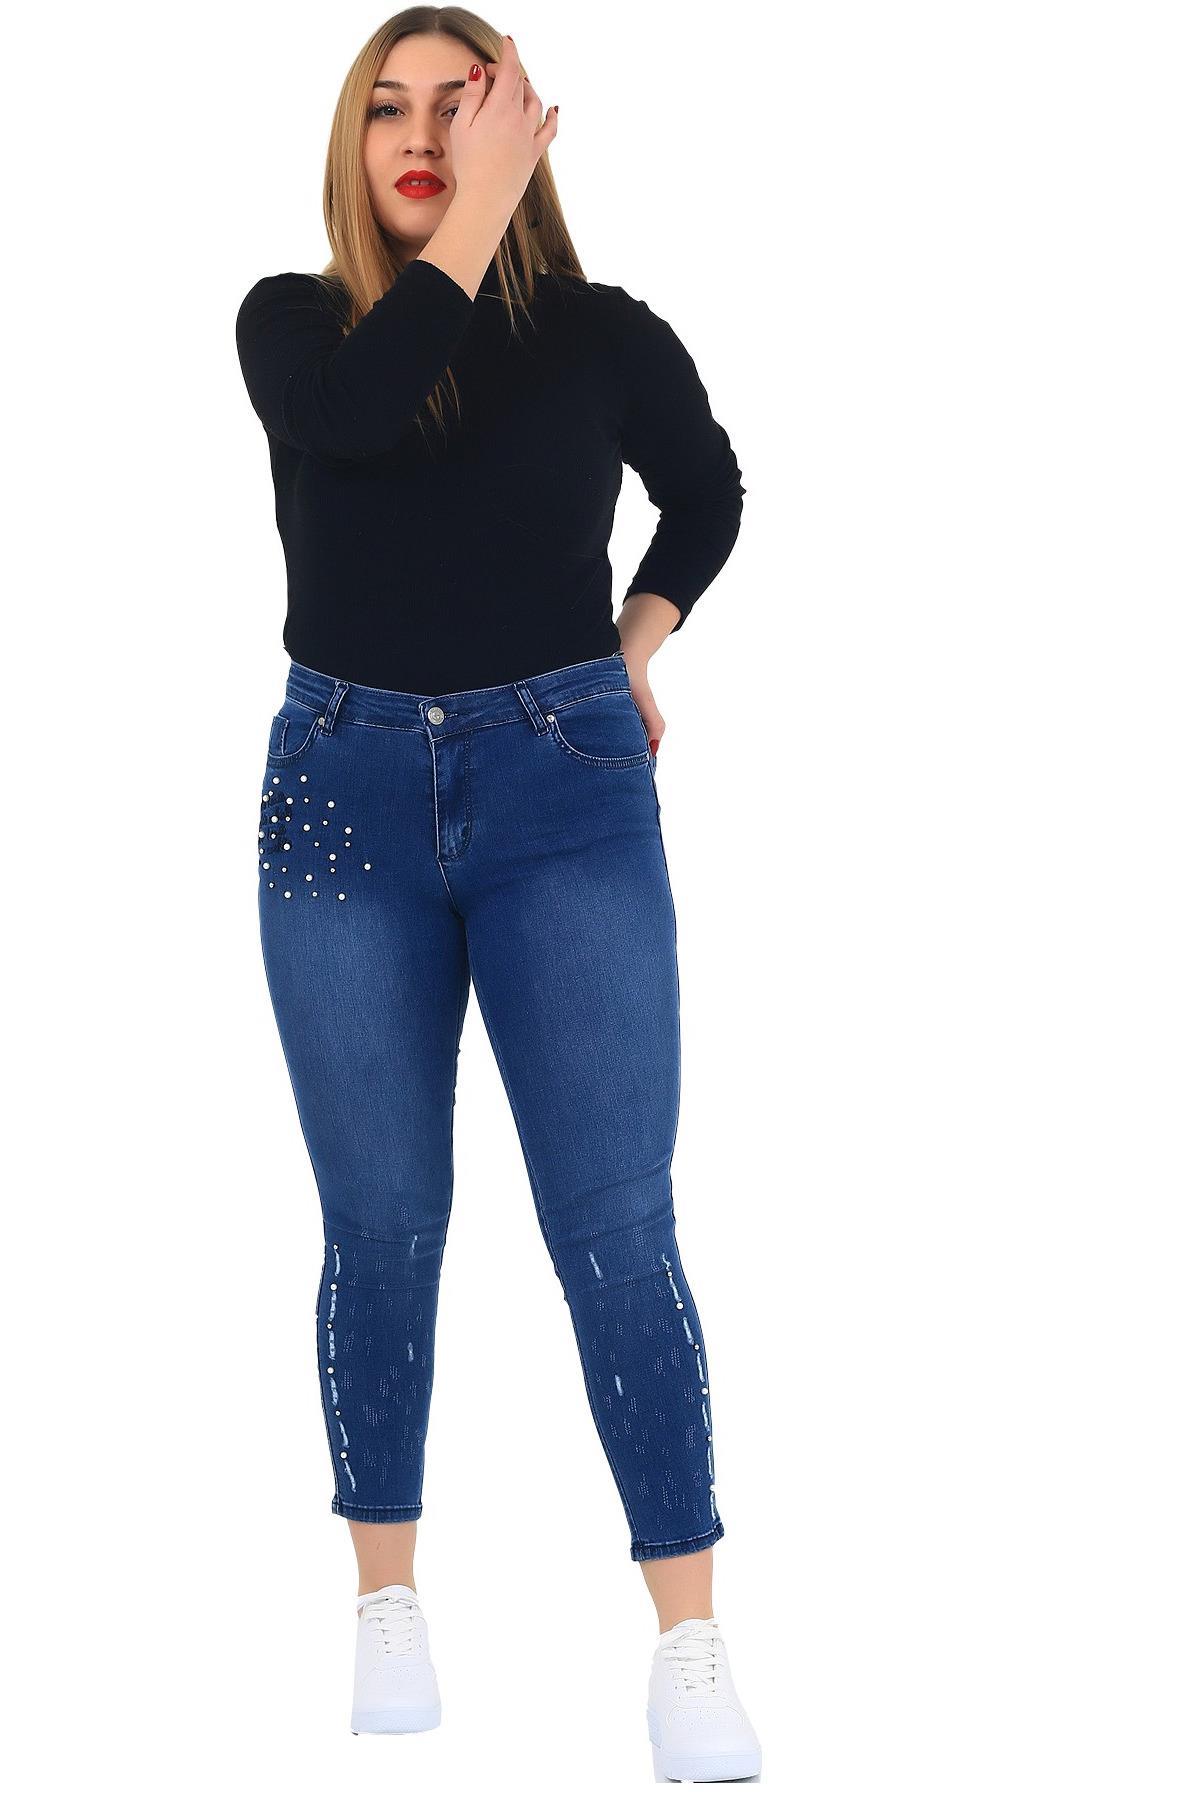 Fierte Kadın Pantolon Rg1563-1 Jean Yüksek Bel Füme Giyim